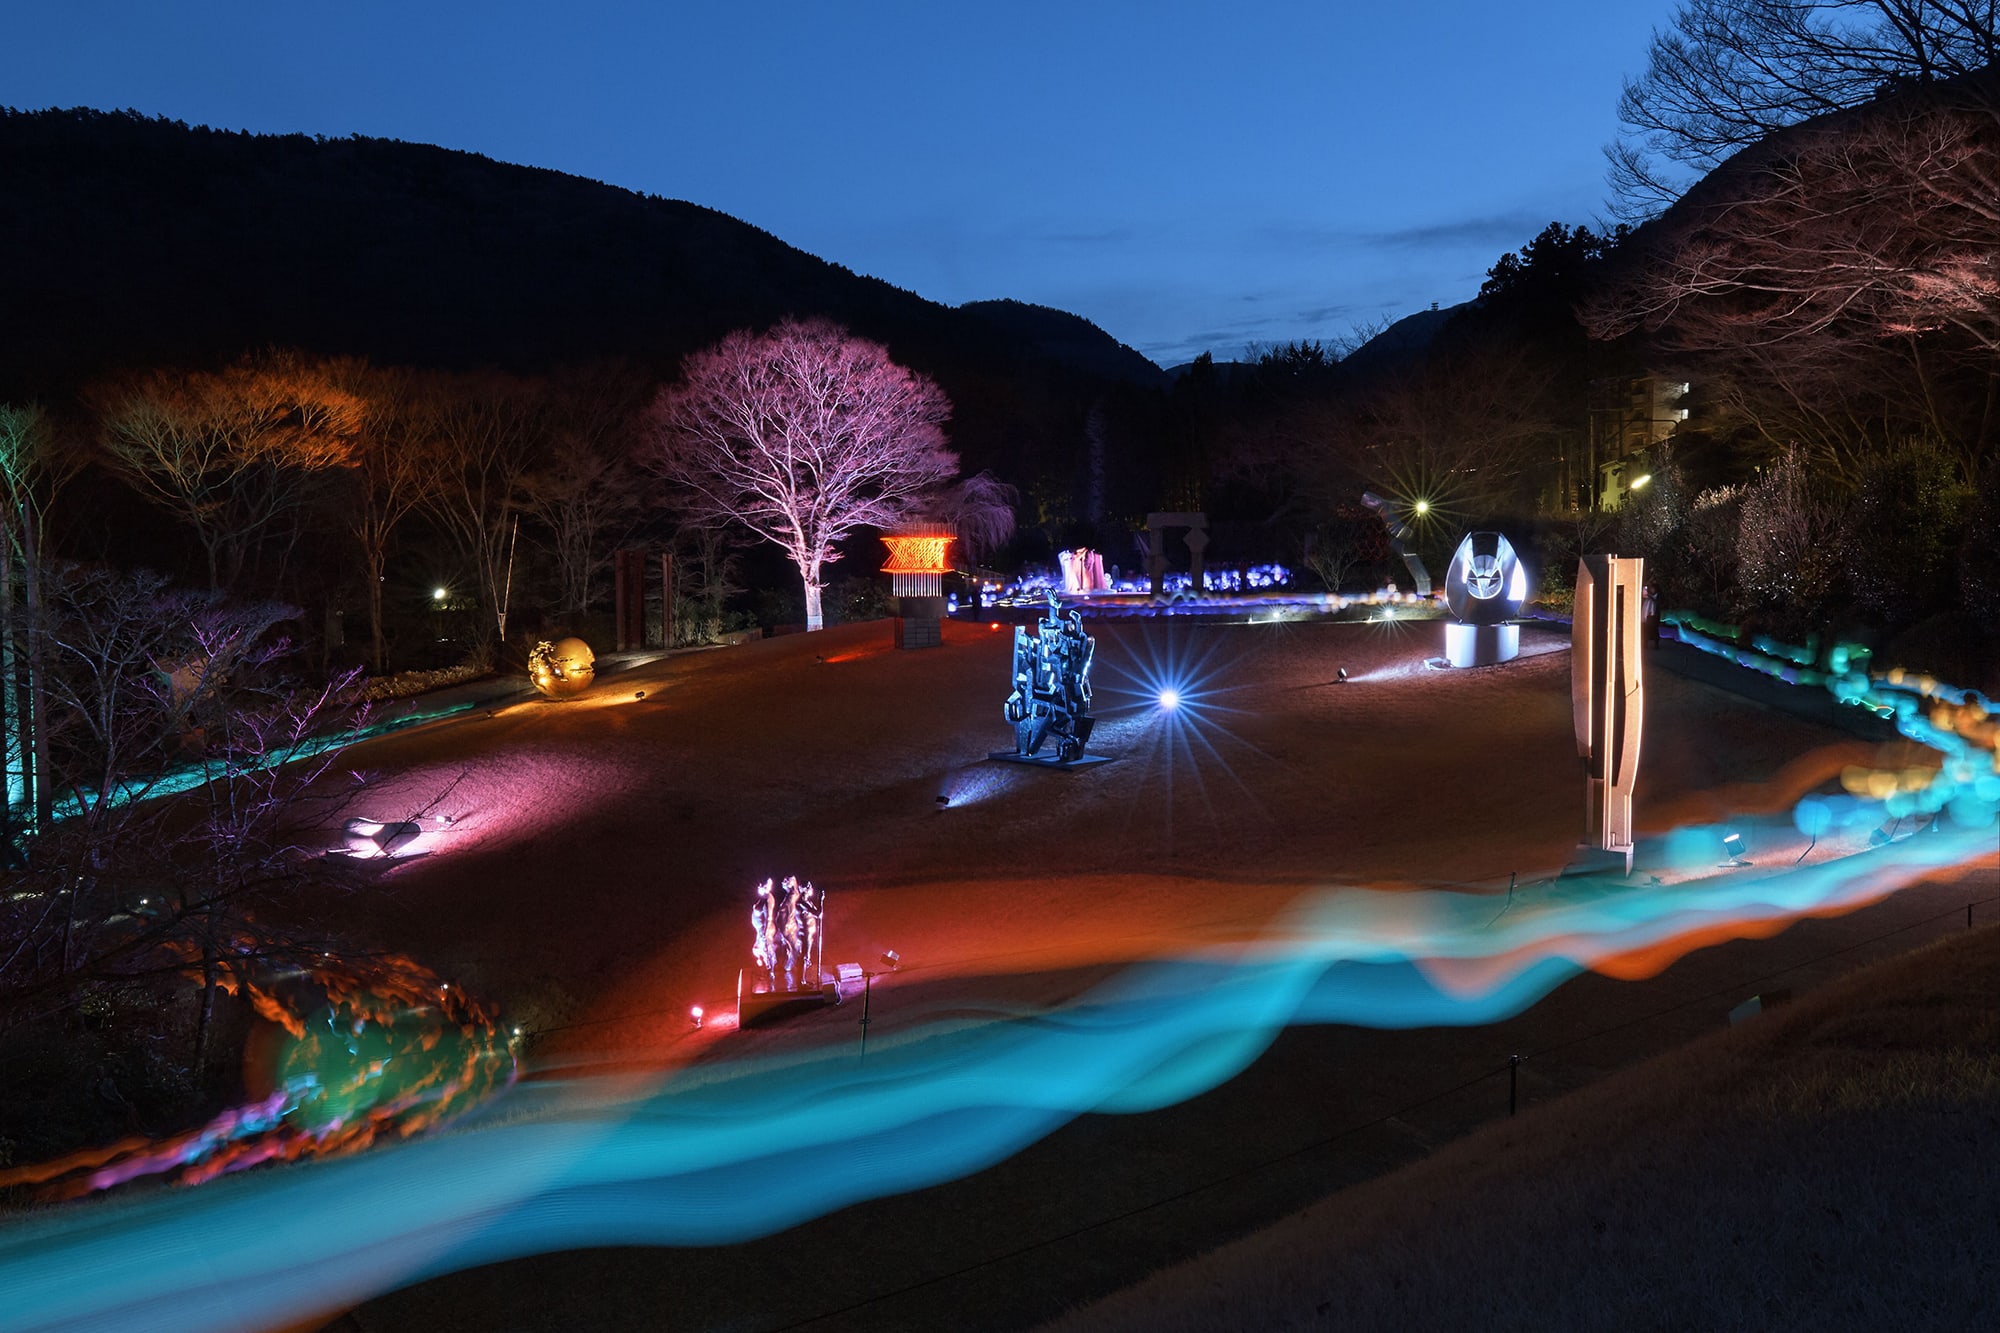 彫刻の森美術館《Glow with Night Garden Project in Hakone》では、来館者は提灯の色が変化するLED提灯を持って庭園を巡る。髙橋匡太《Glow with Night Garden Project in Hakone》Photo: Mito Murakami